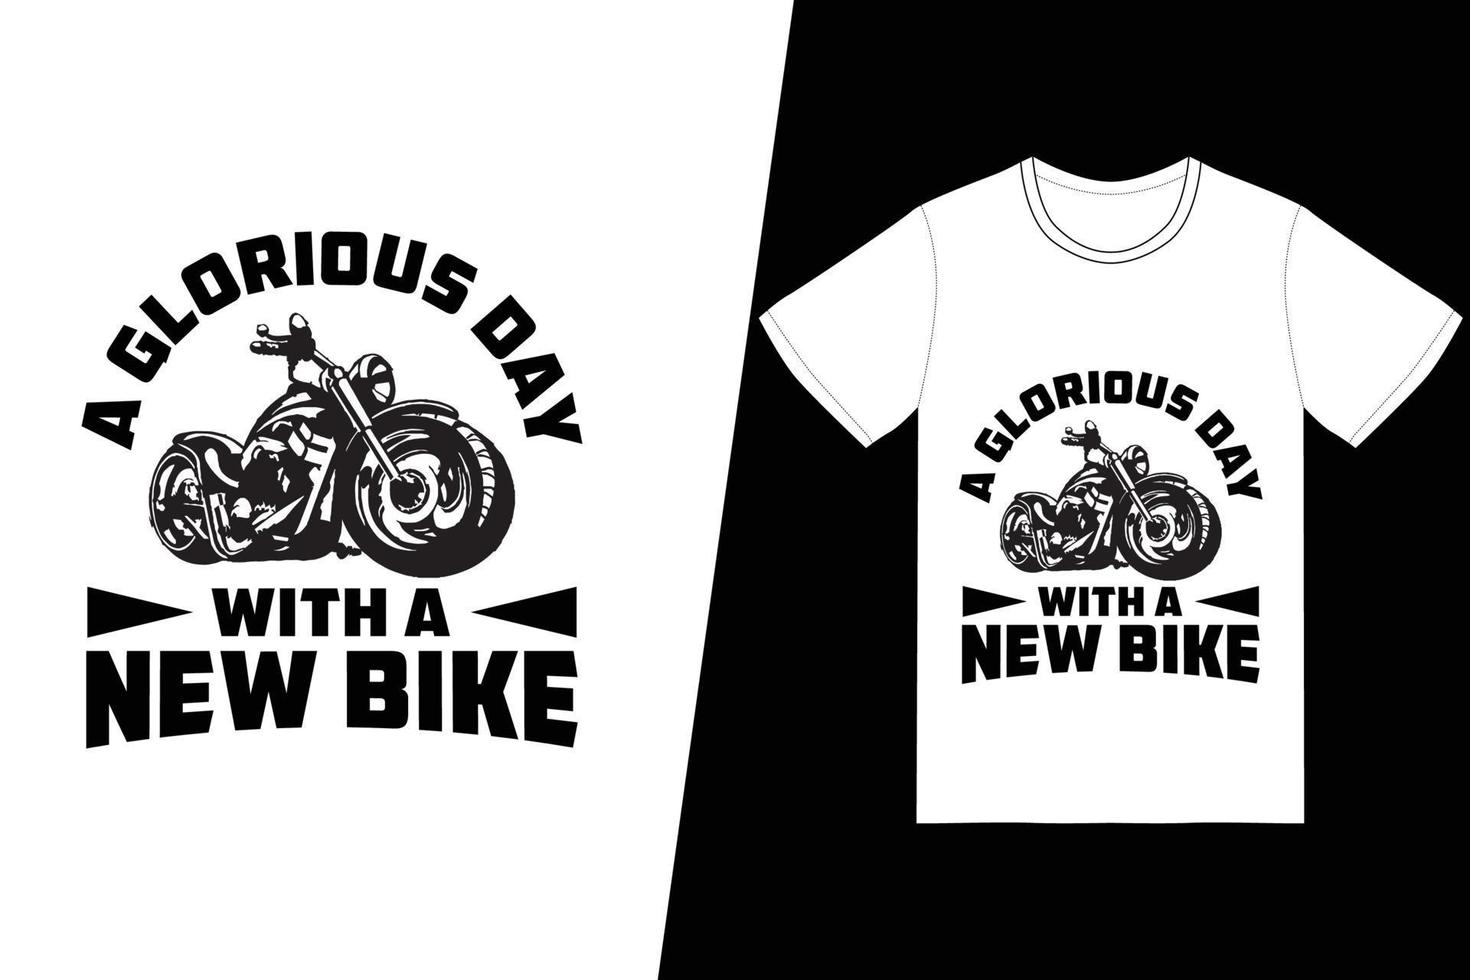 una giornata gloriosa con un nuovo design di t-shirt da bici. vettore di disegno della maglietta del motociclo. per la stampa di t-shirt e altri usi.